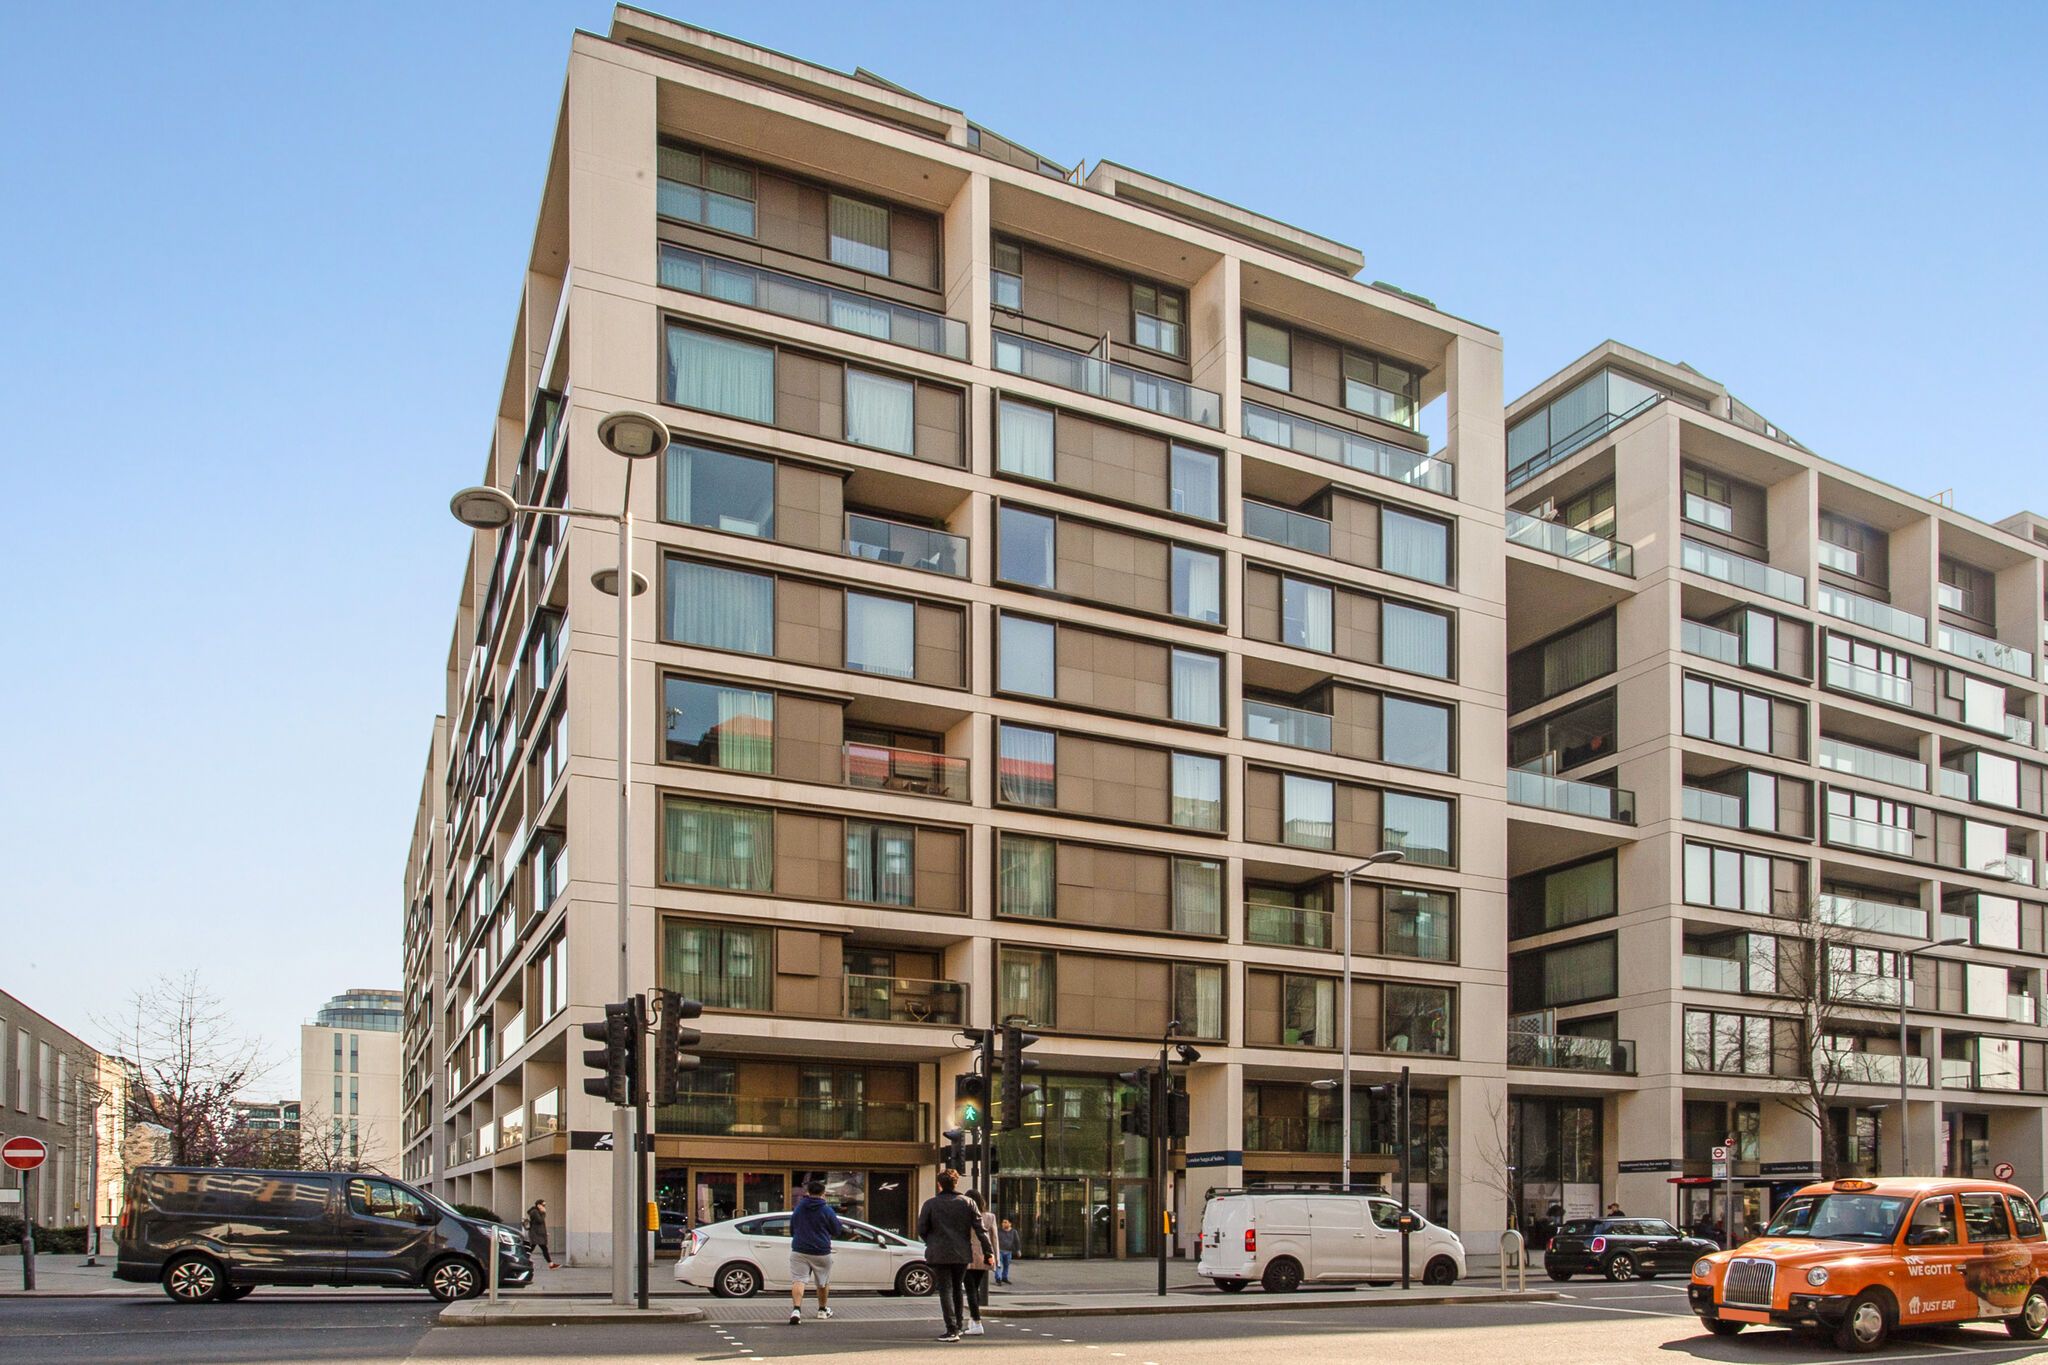 1 bed flat for sale in 377 High Street Kensington, London W14, £900,000 -  Zoopla